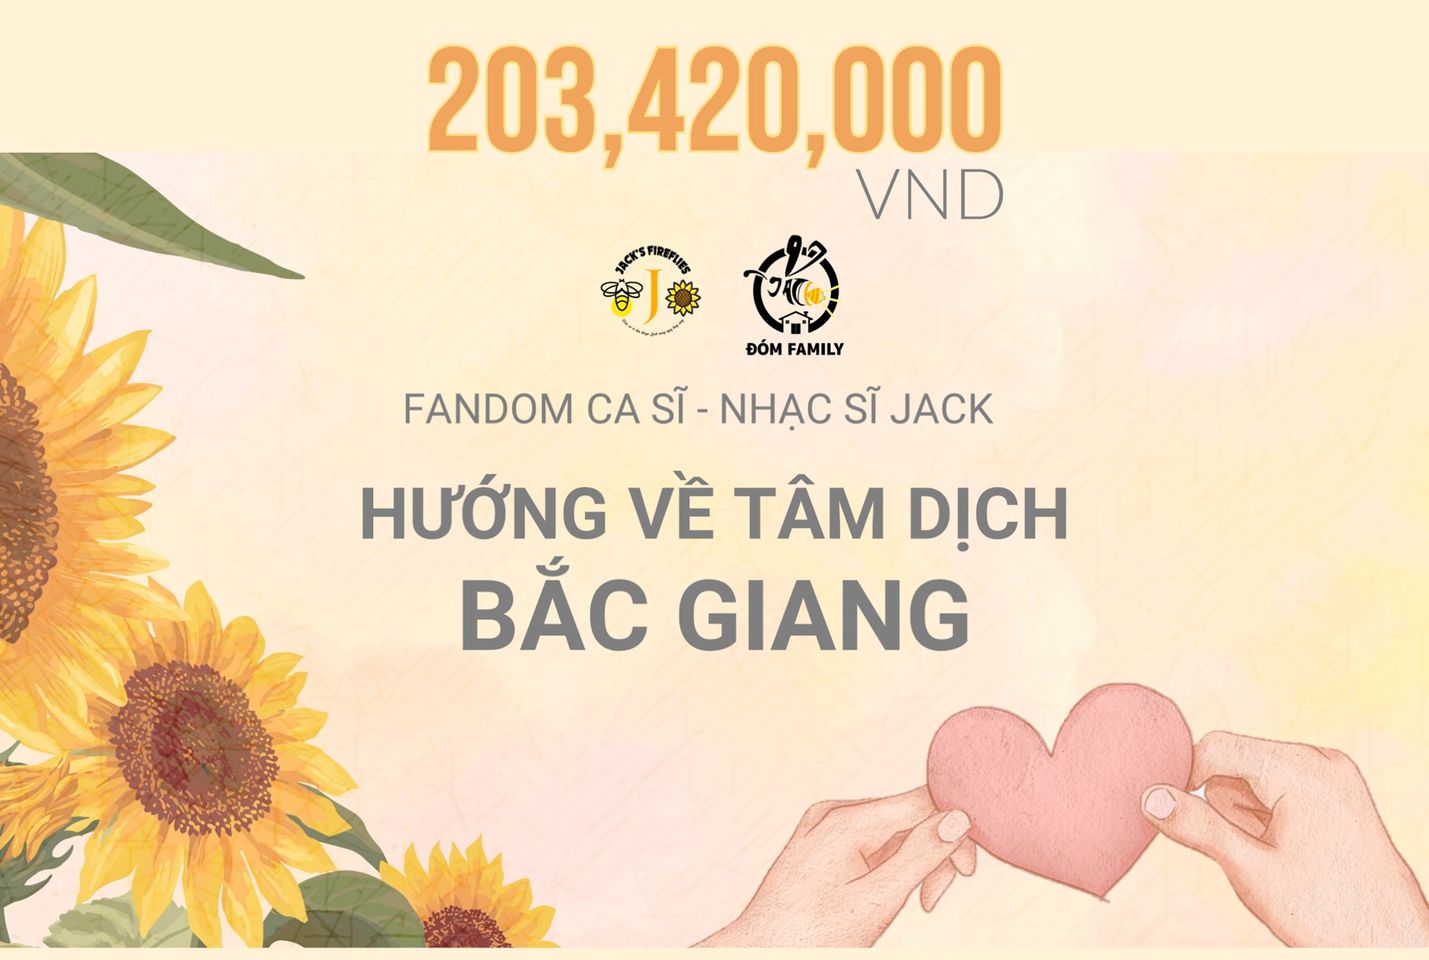 Nổi tiếng là fandom thường xuyên làm từ thiện, nhóm fan của Jack (Phương Tuấn) kêu gọi hơn 200 triệu đồng để chung tay đẩy lùi dịch bệnh